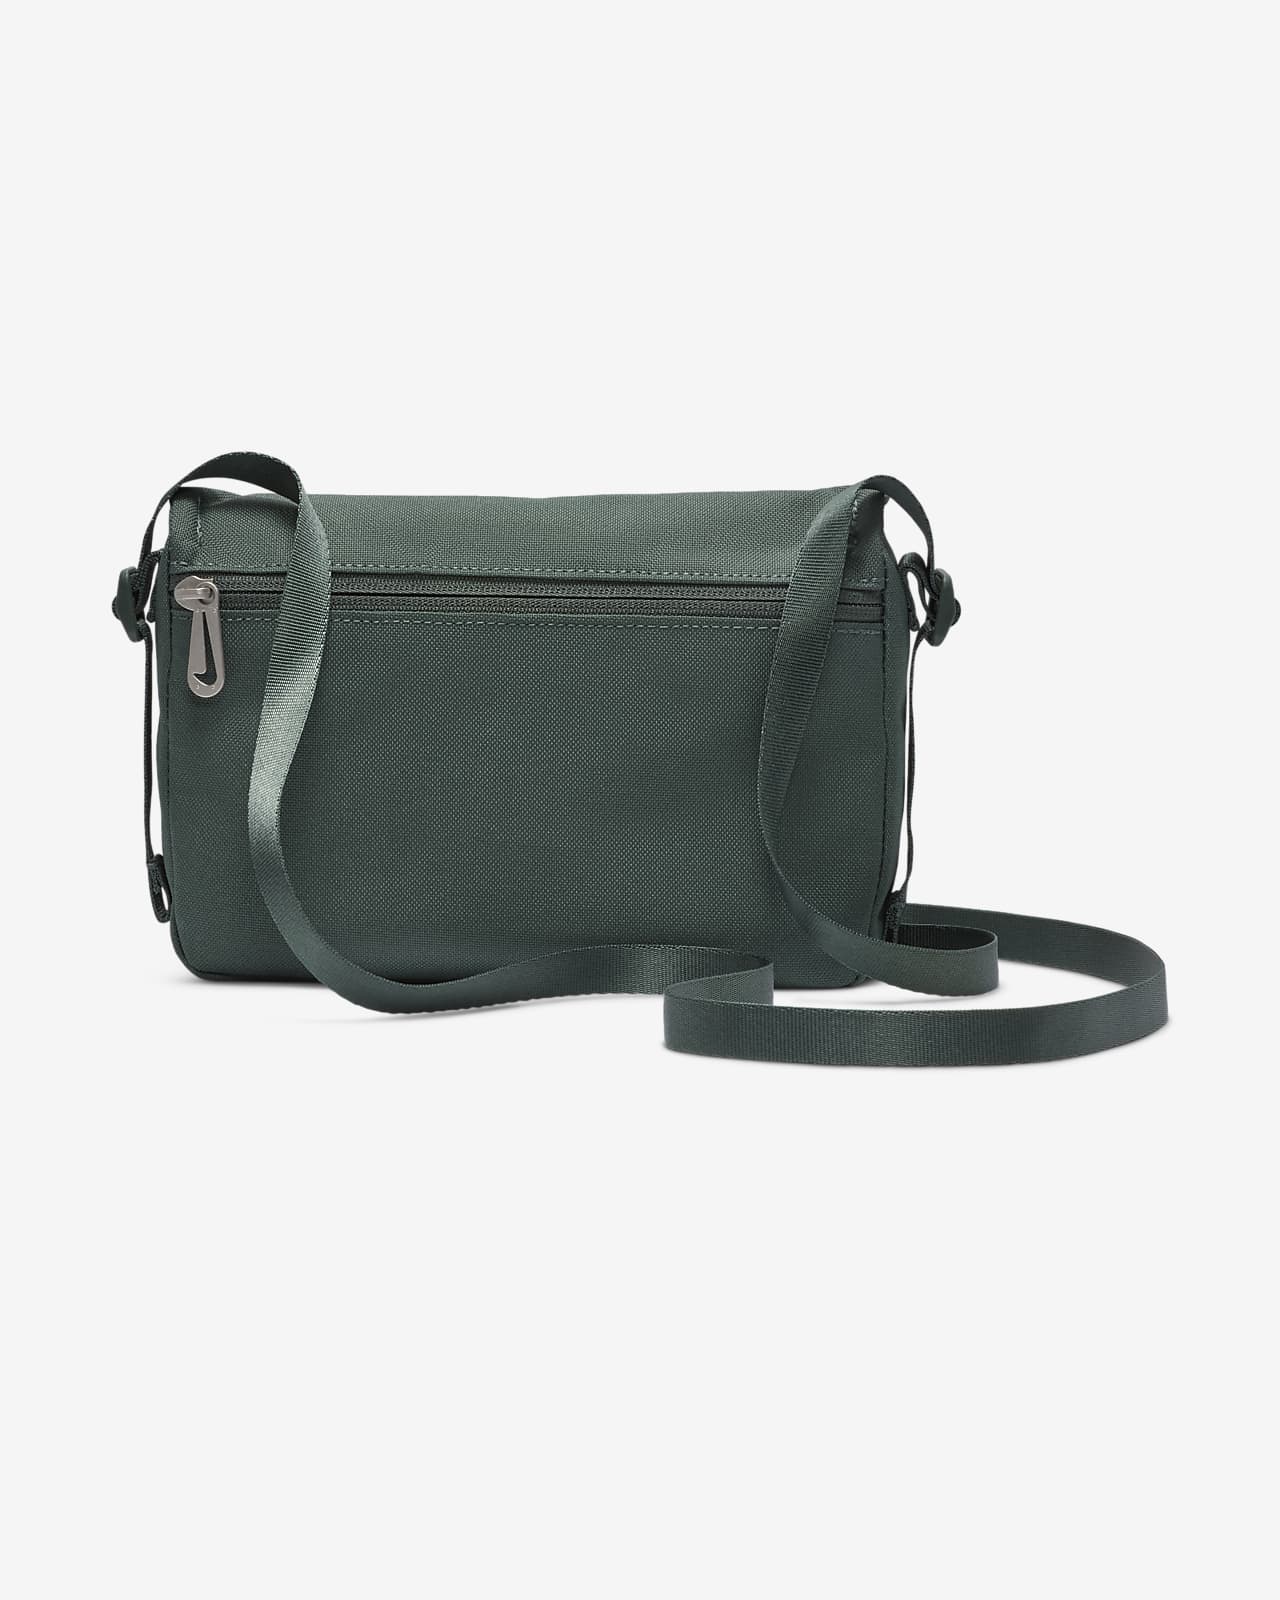 Crossbody Bag Men's Shoulder Bags for Men Business Purse Handbag Messenger  with Adjustable Strap - Walmart.com